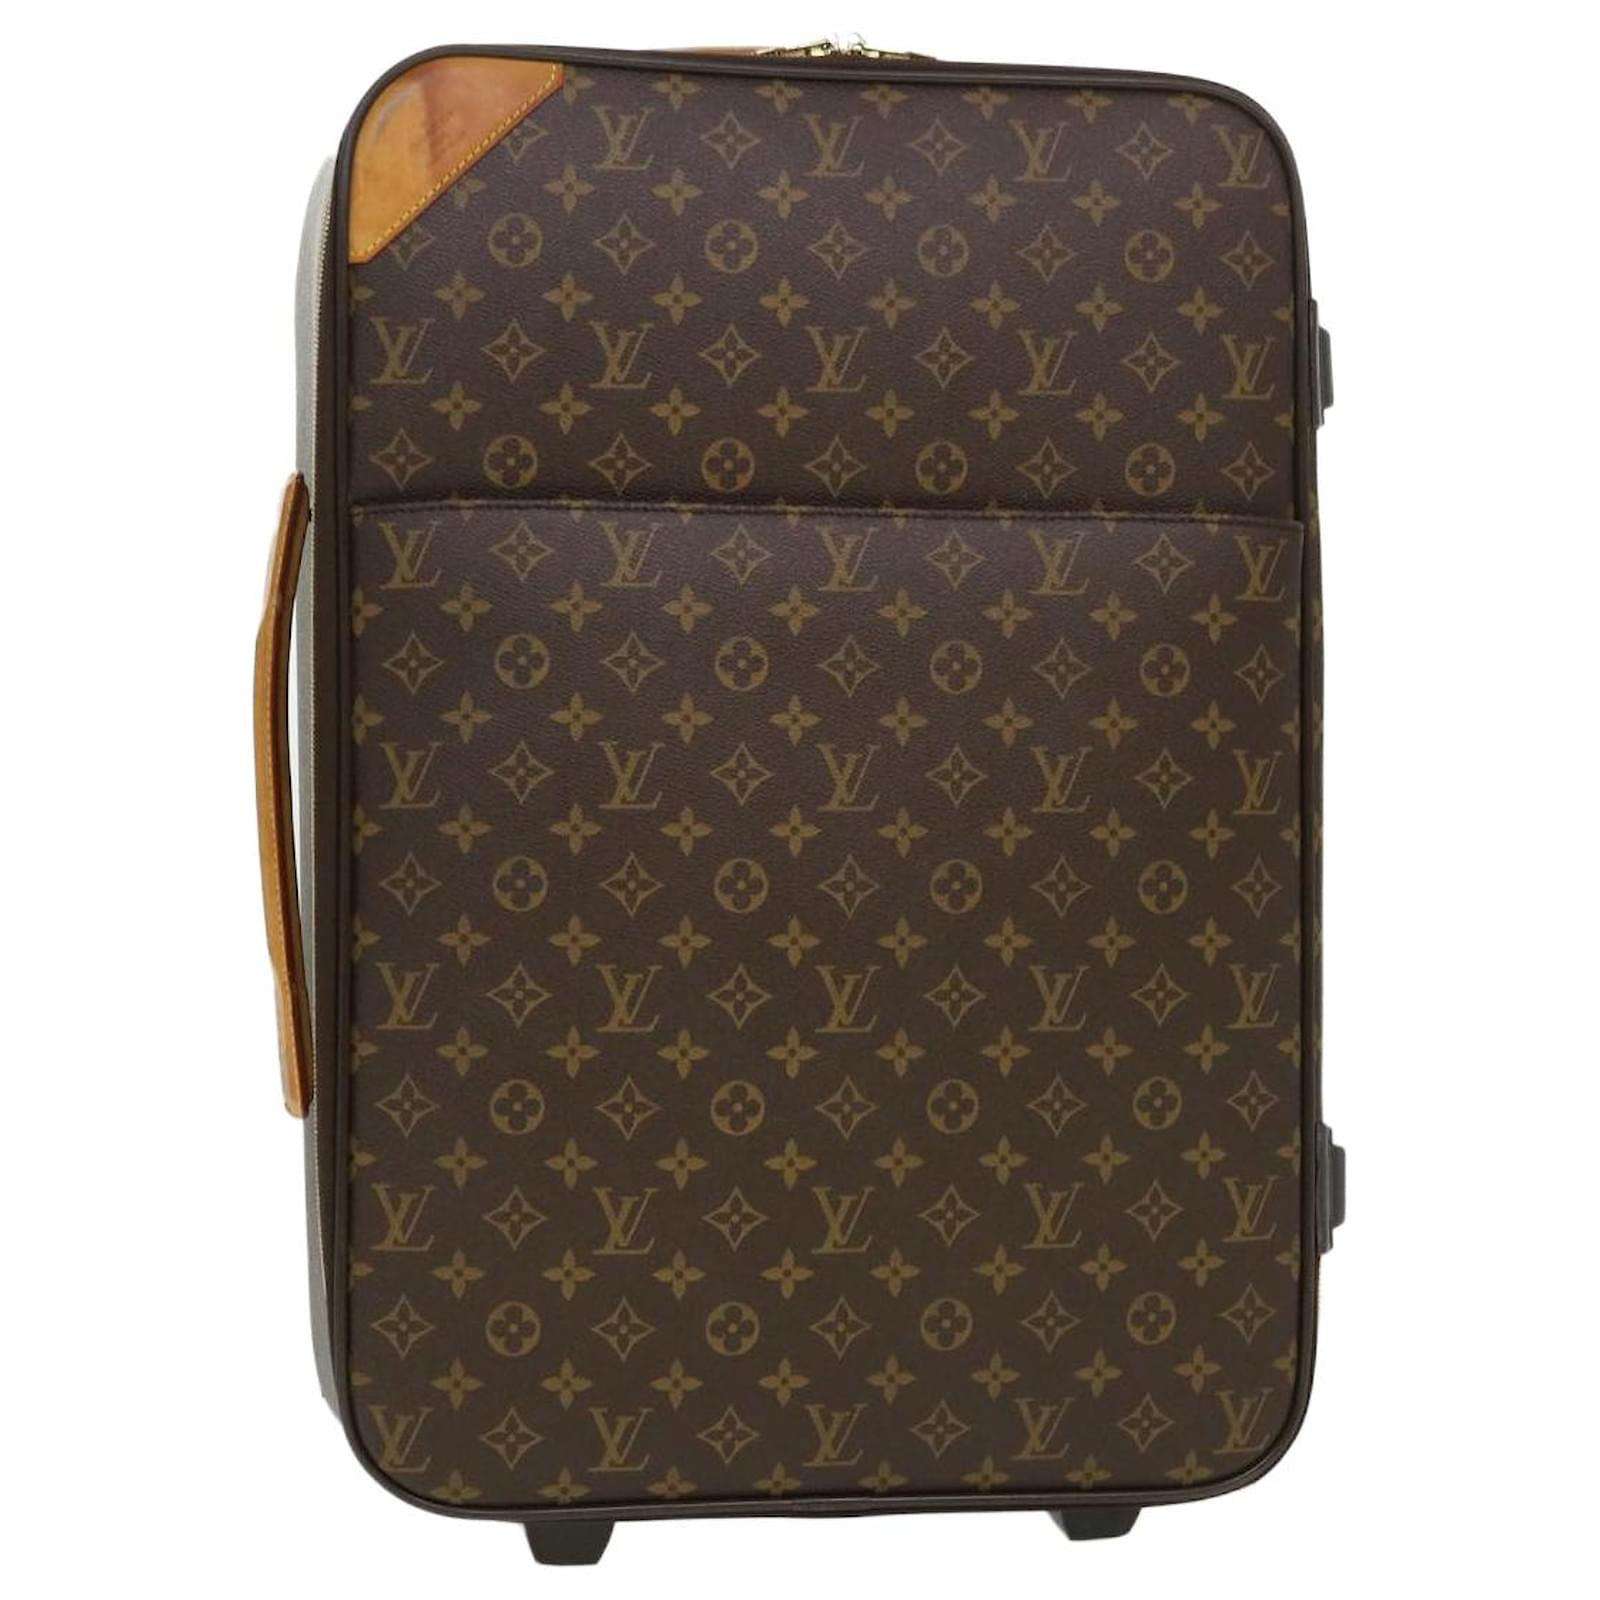 LOUIS VUITTON Sirius 70 brown LV monogram canvas large travel bag